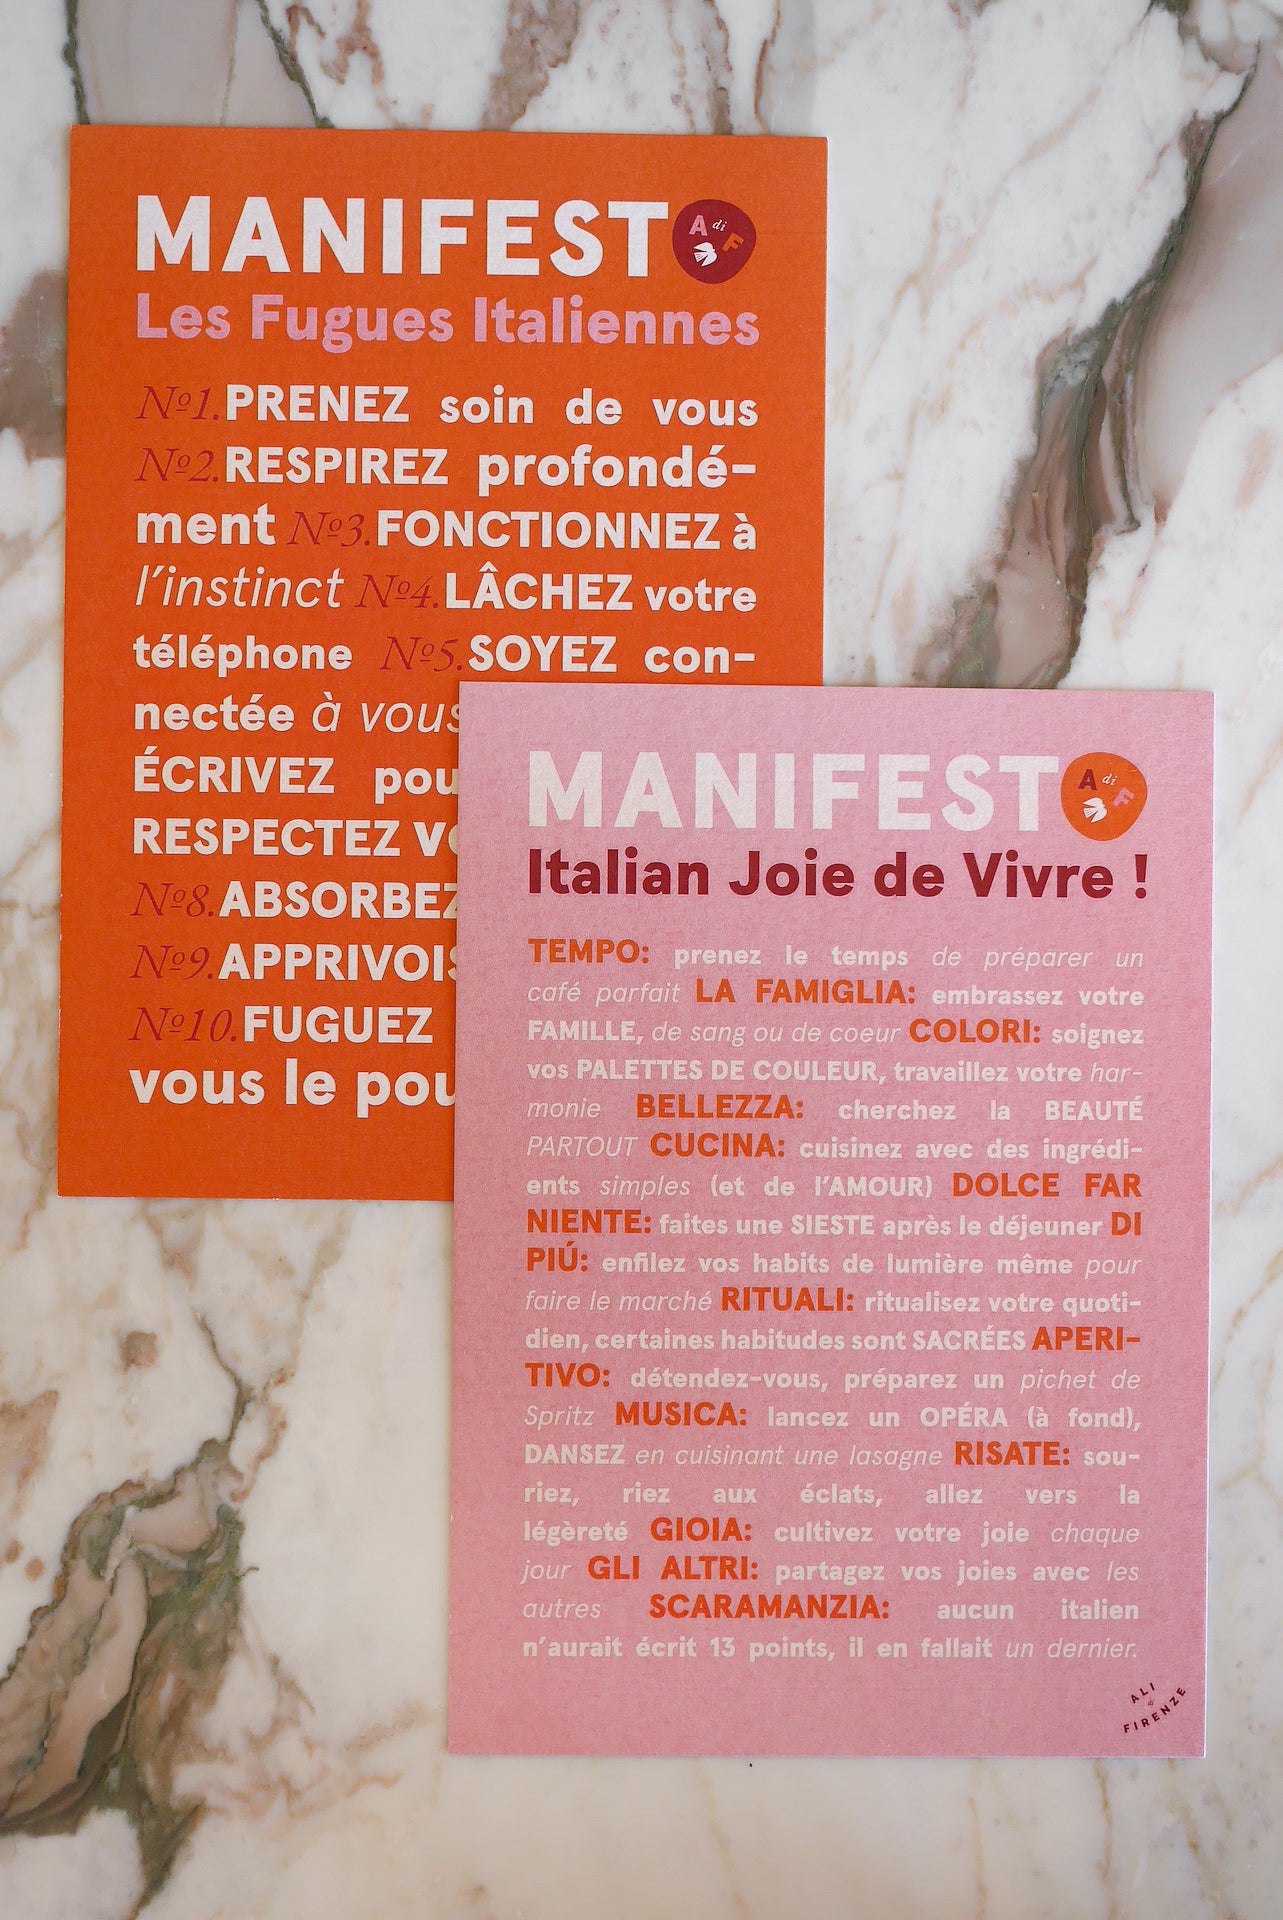 Manifesto "Italian Joie de Vivre!"